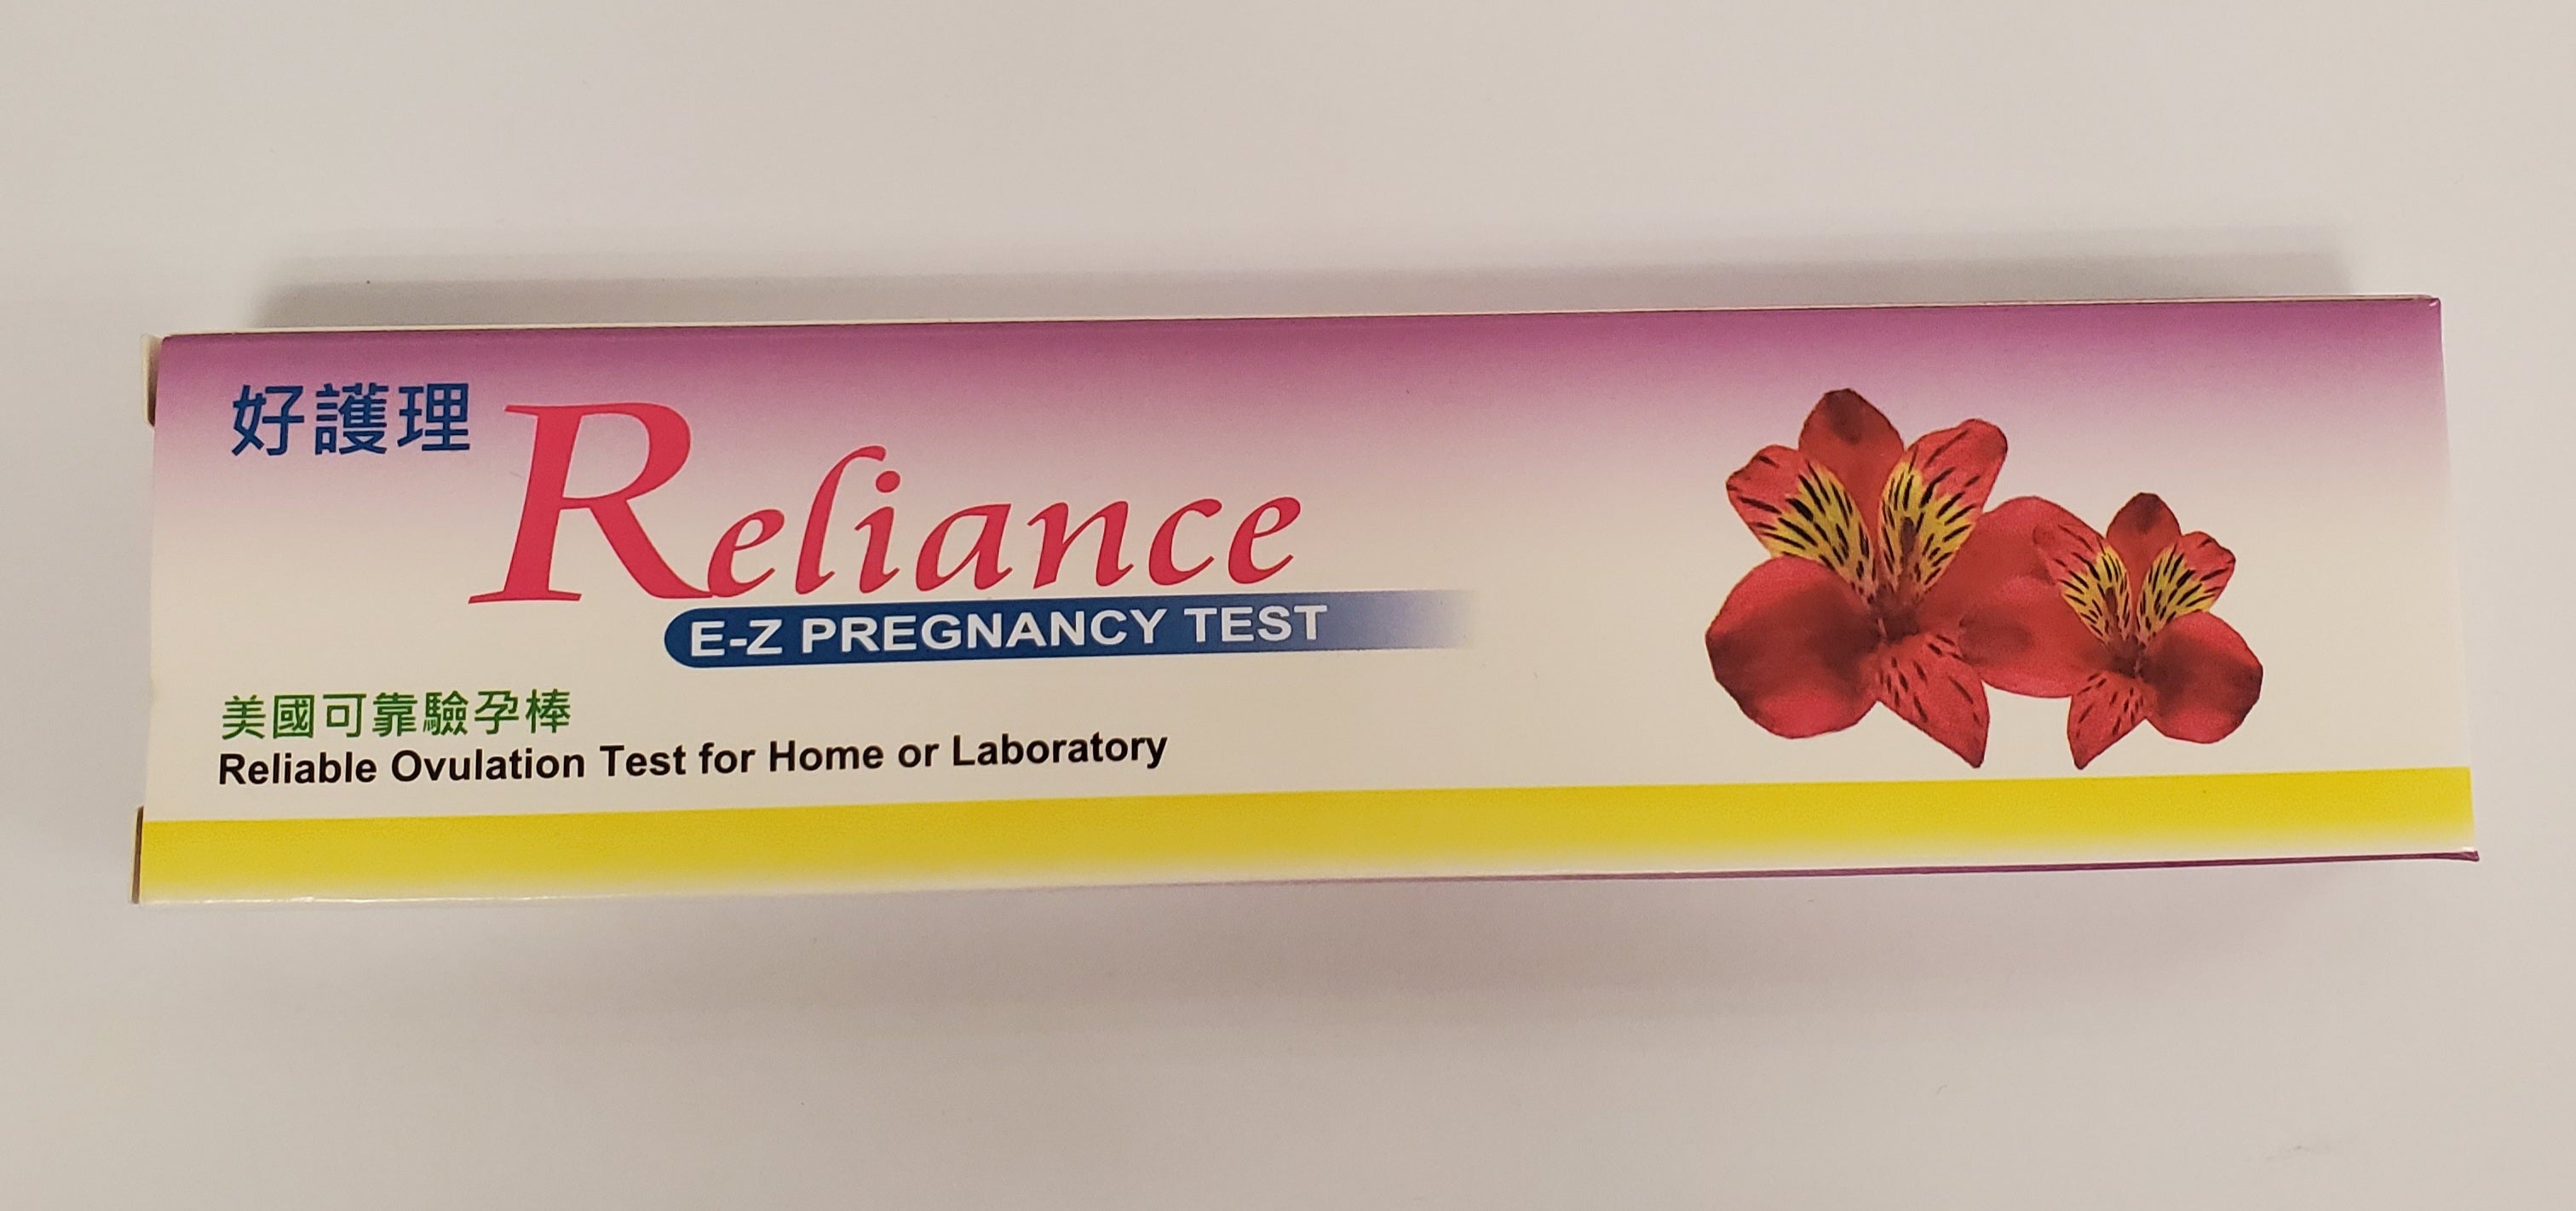 Reliance E-Z Pregnancy Test